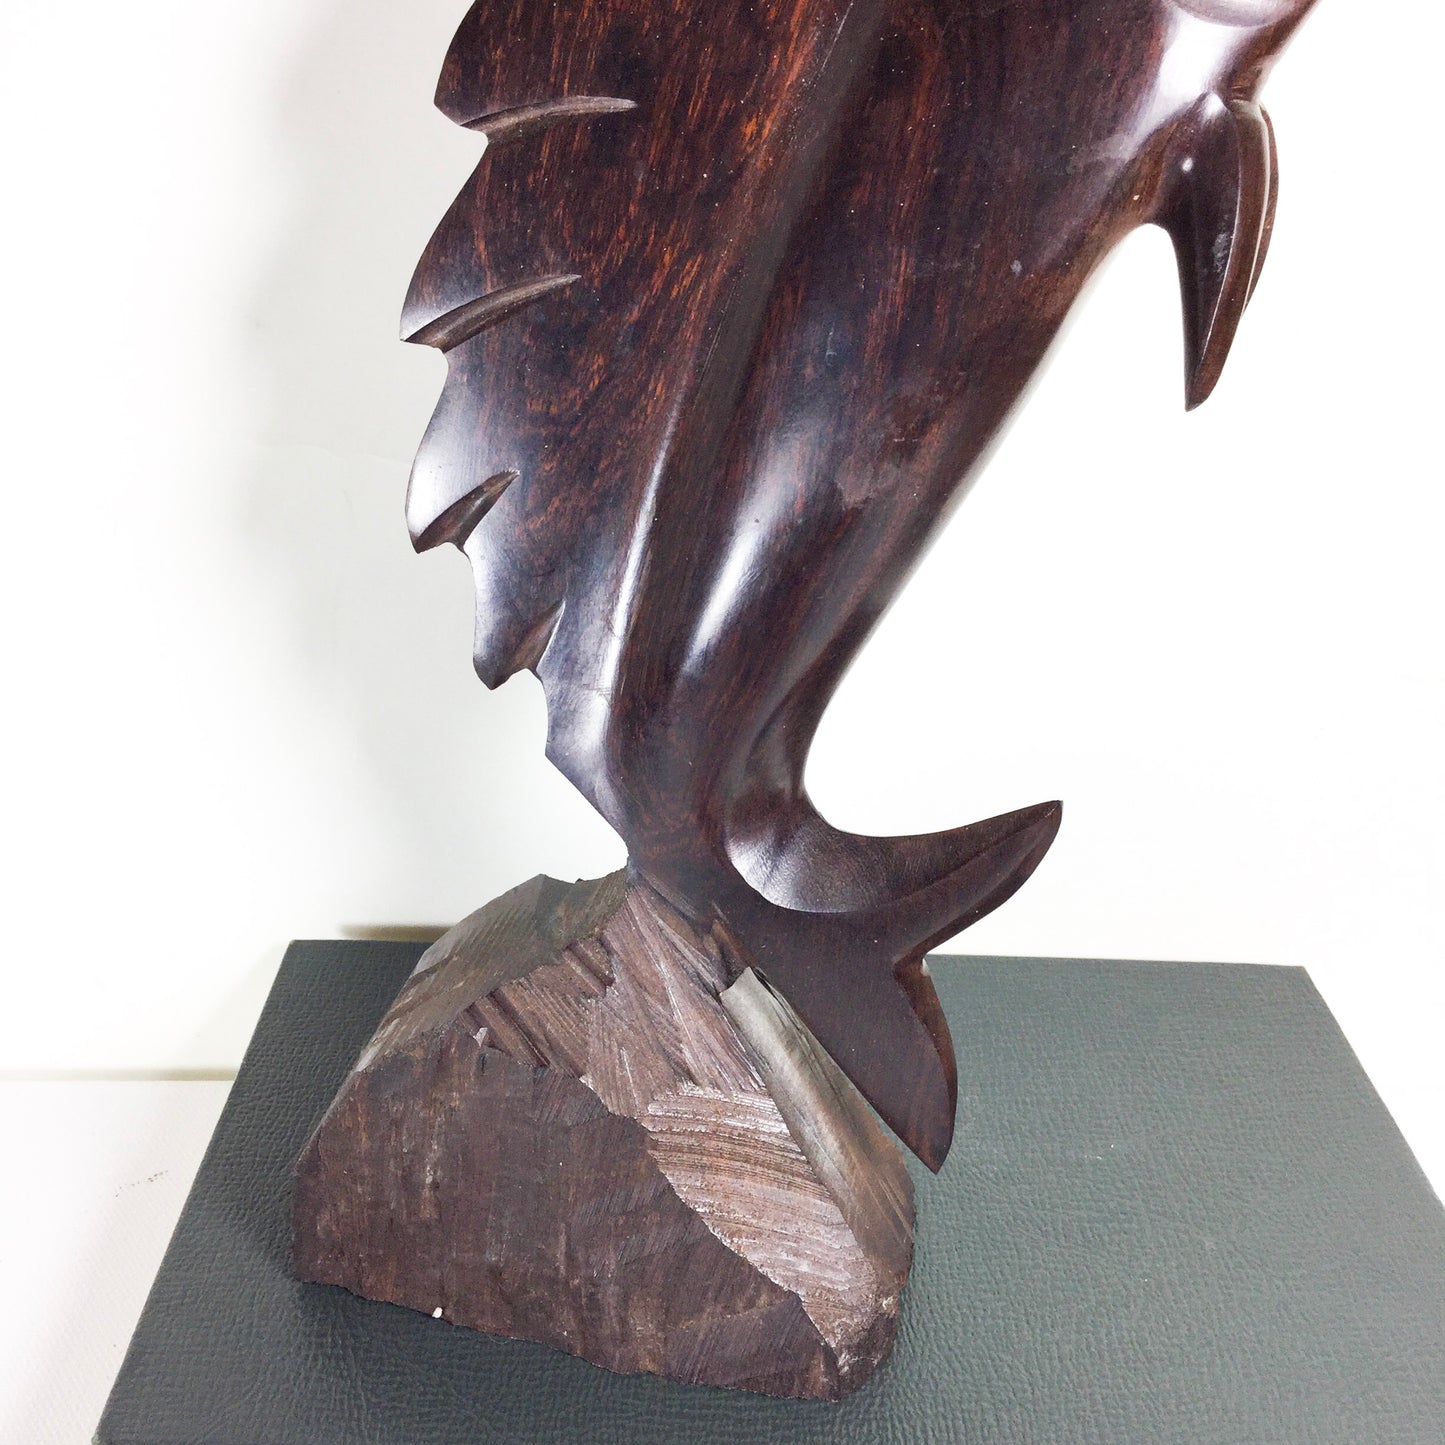 Vintage Ironwood Marlin Fish Figurine